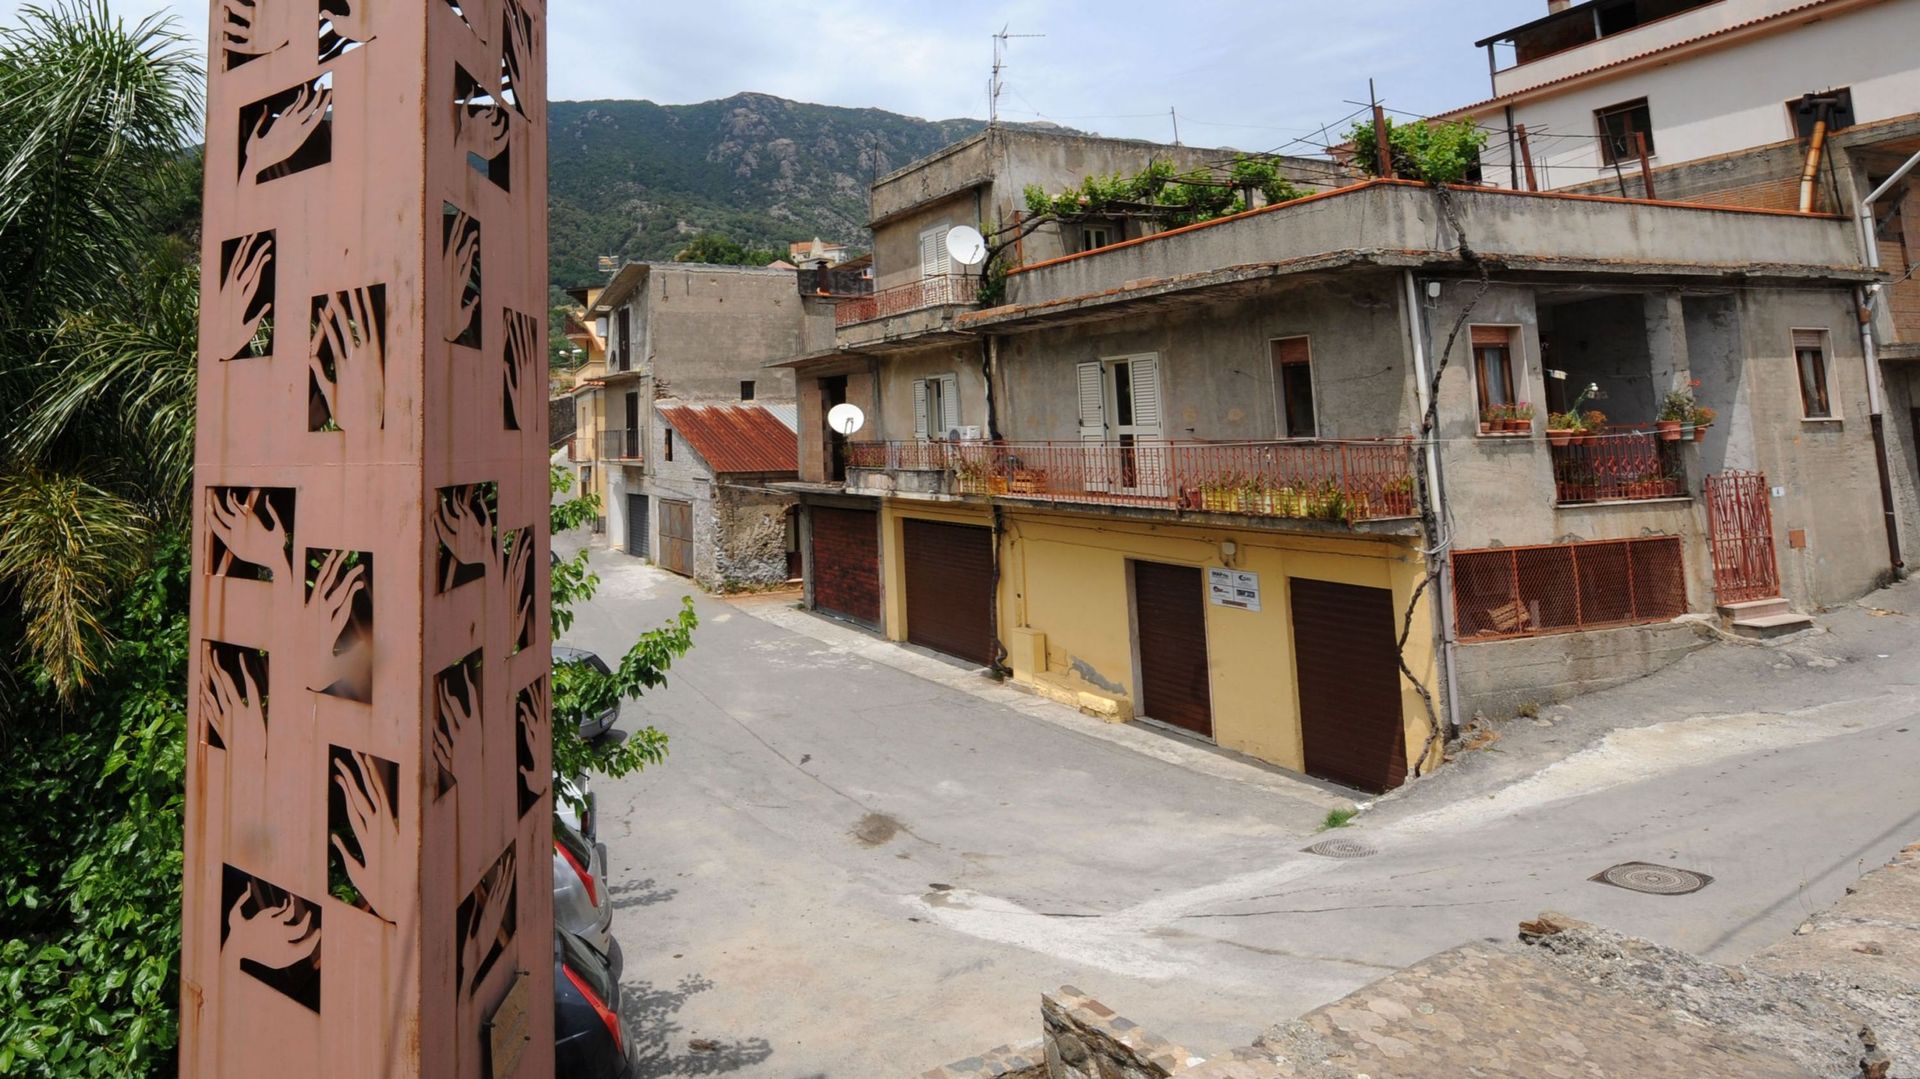 A Plati, près de Reggio en Calabre, des élections n’ont pas peu se dérouler en 2015, faute de candidats osant braver la Ndrangheta, la mafia calabraise. 